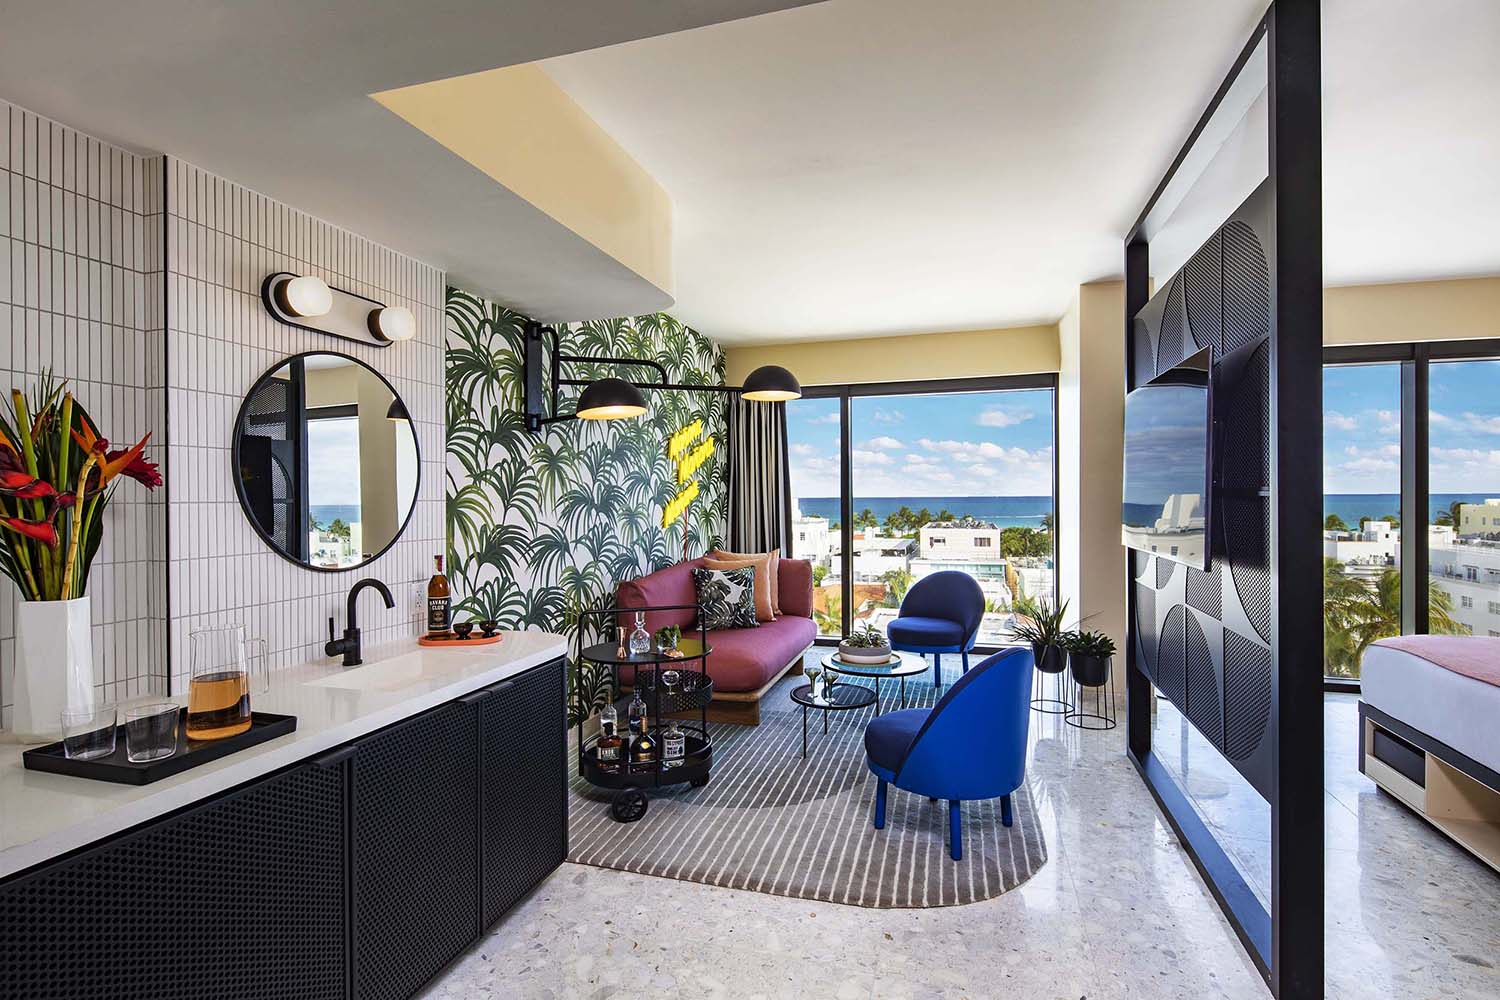 莫西迈阿密南海滩设计酒店由罗克韦尔集团万豪设计